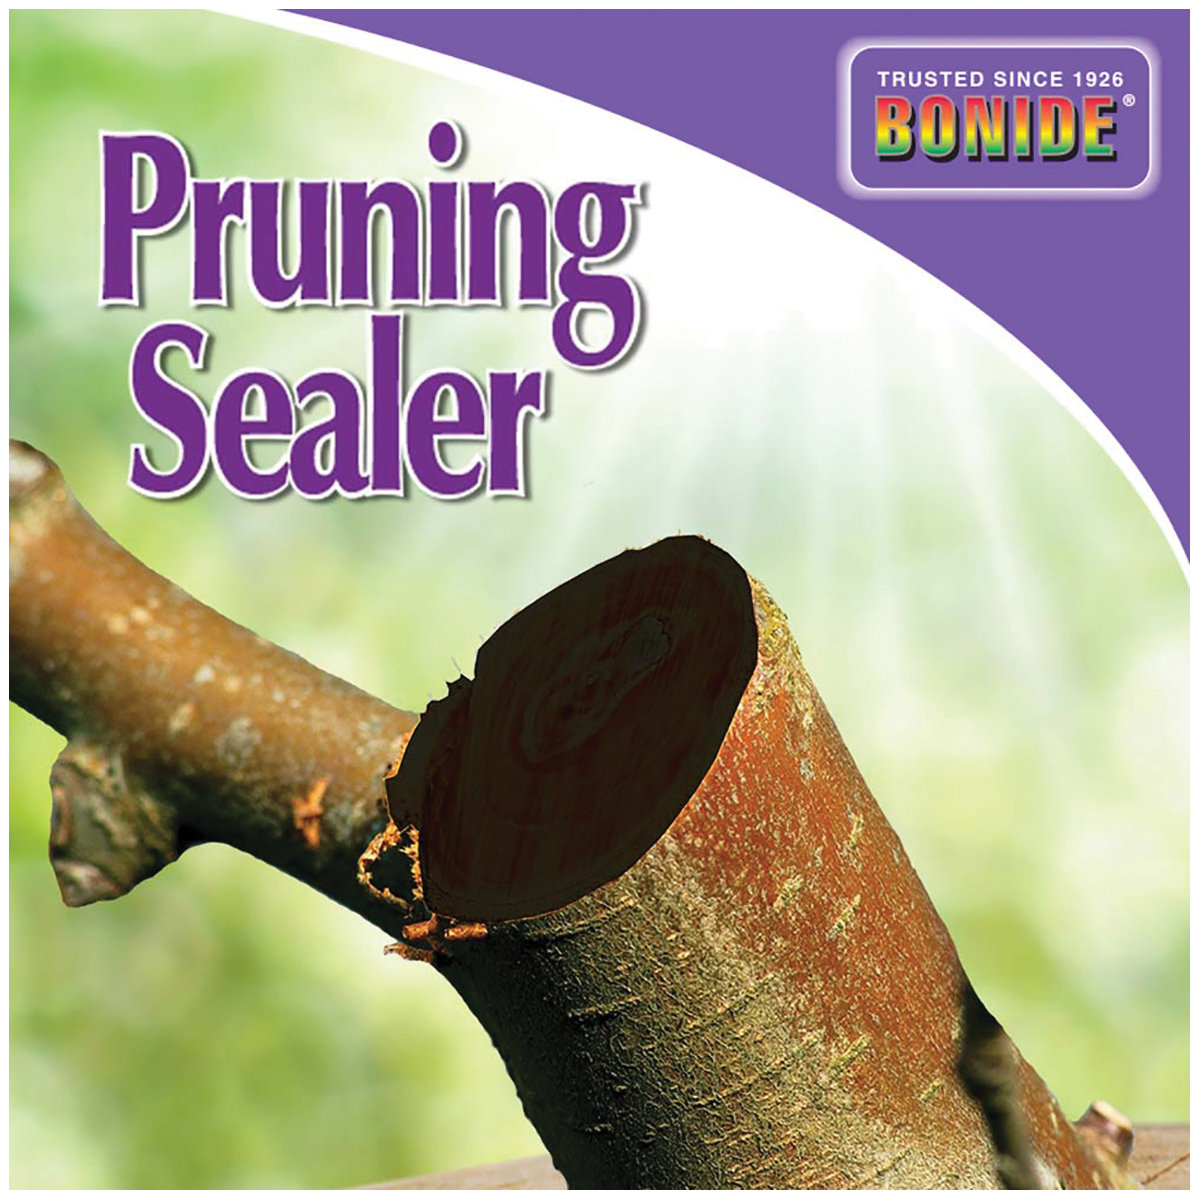 Bonide 225 Pruning Sealer, Liquid, Petroleum Solvent, Black, 1 pt - 3